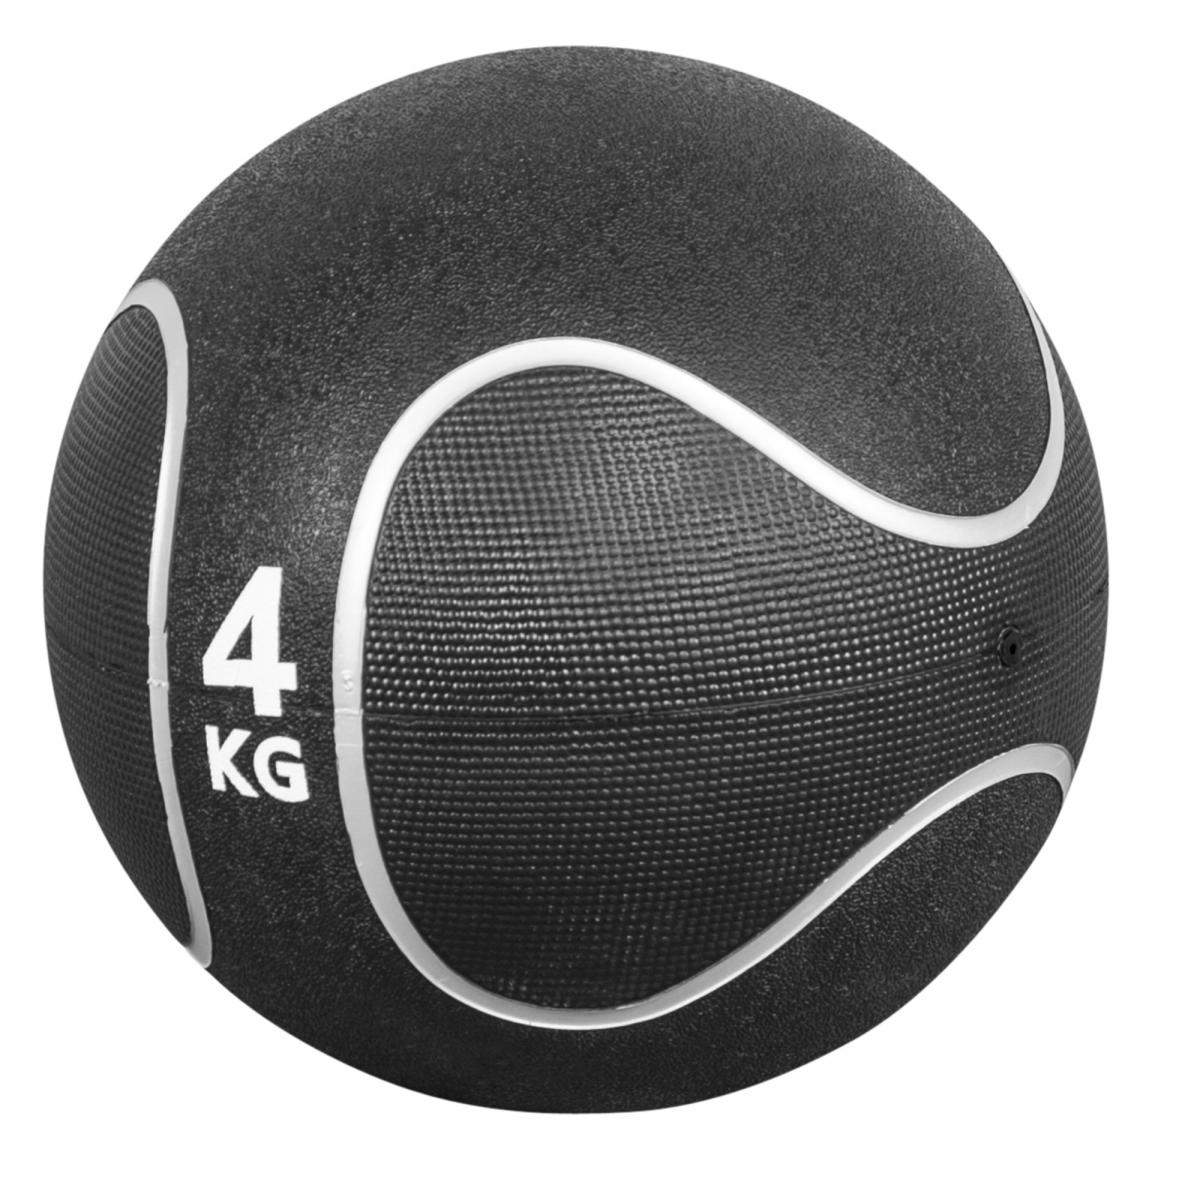 Médecine ball style noir/gris de 4 KG diamètre 23cm